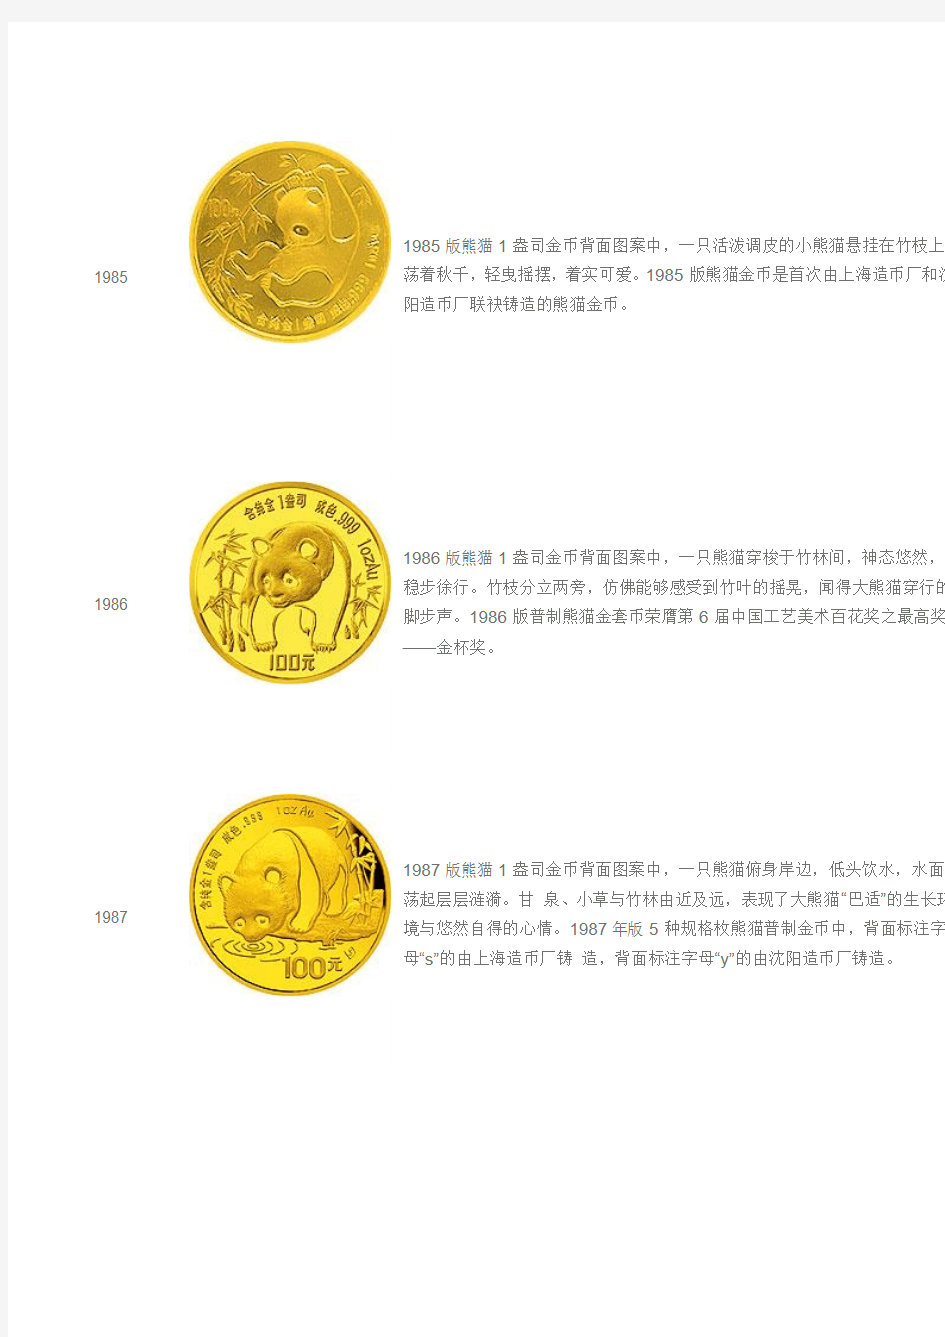 1982—2012年发行的熊猫金币简介(图案均以1盎司金币为例)